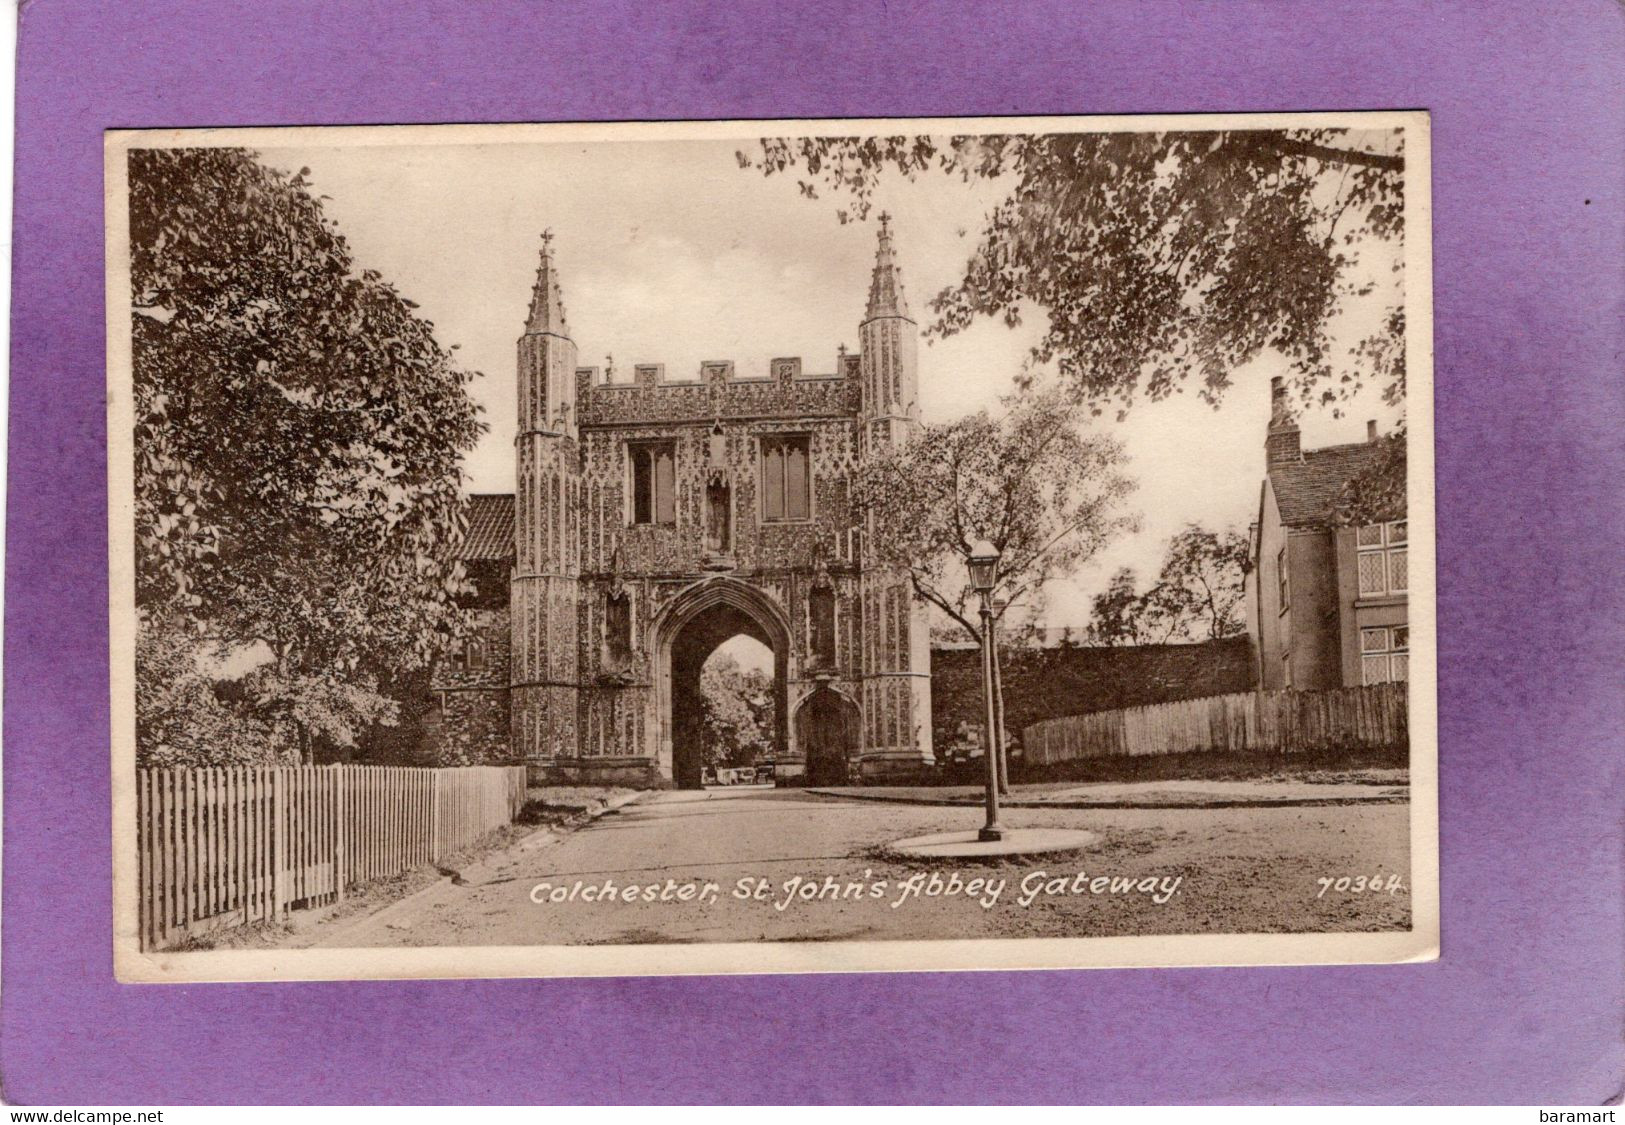 Colchester St John's Abbey Gateway - Colchester